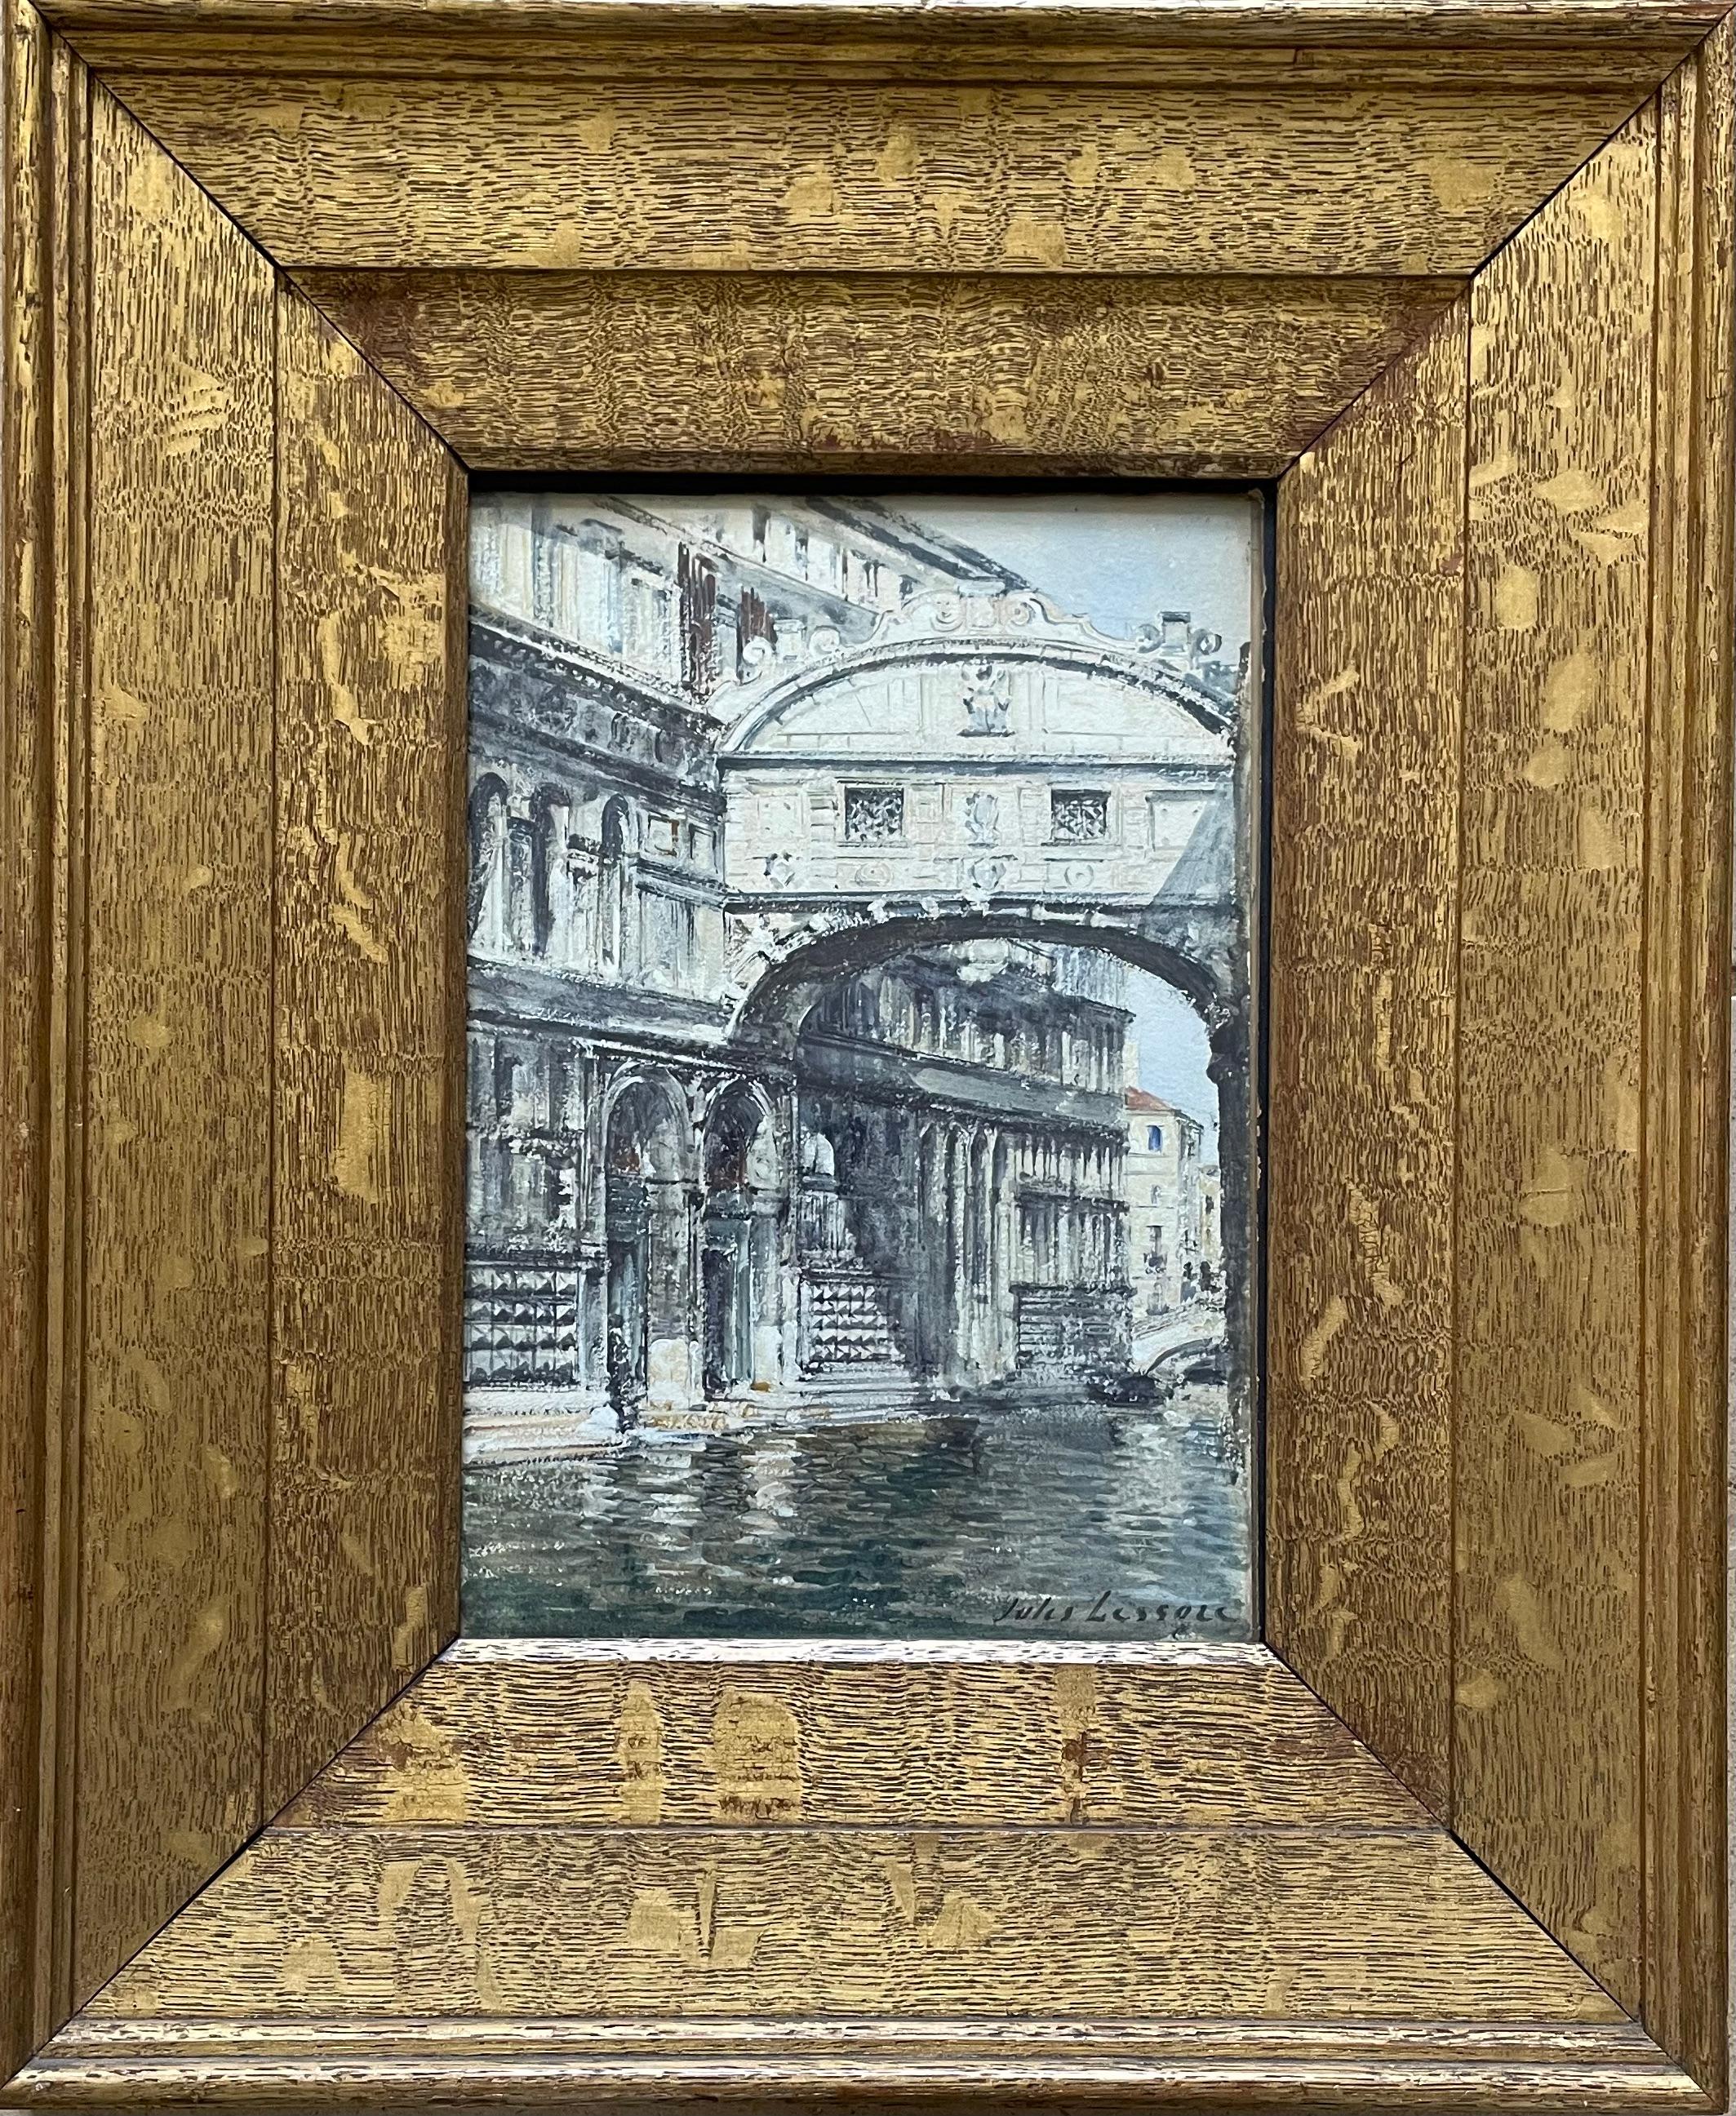 JULES LESSORE
(1849-1892)

Le pont des soupirs, Venise

Signé à gauche : Jules Lessore
Aquarelle
Encadré

24,5 par 17 cm, 9 ¾ par 6 ¾ in.
(format du cadre 44,5 x 36,5 cm, 17 ½ x 14 ½ in.)

Provenance :
Avec Duncan Miller Fine Art, Londres.

Jules